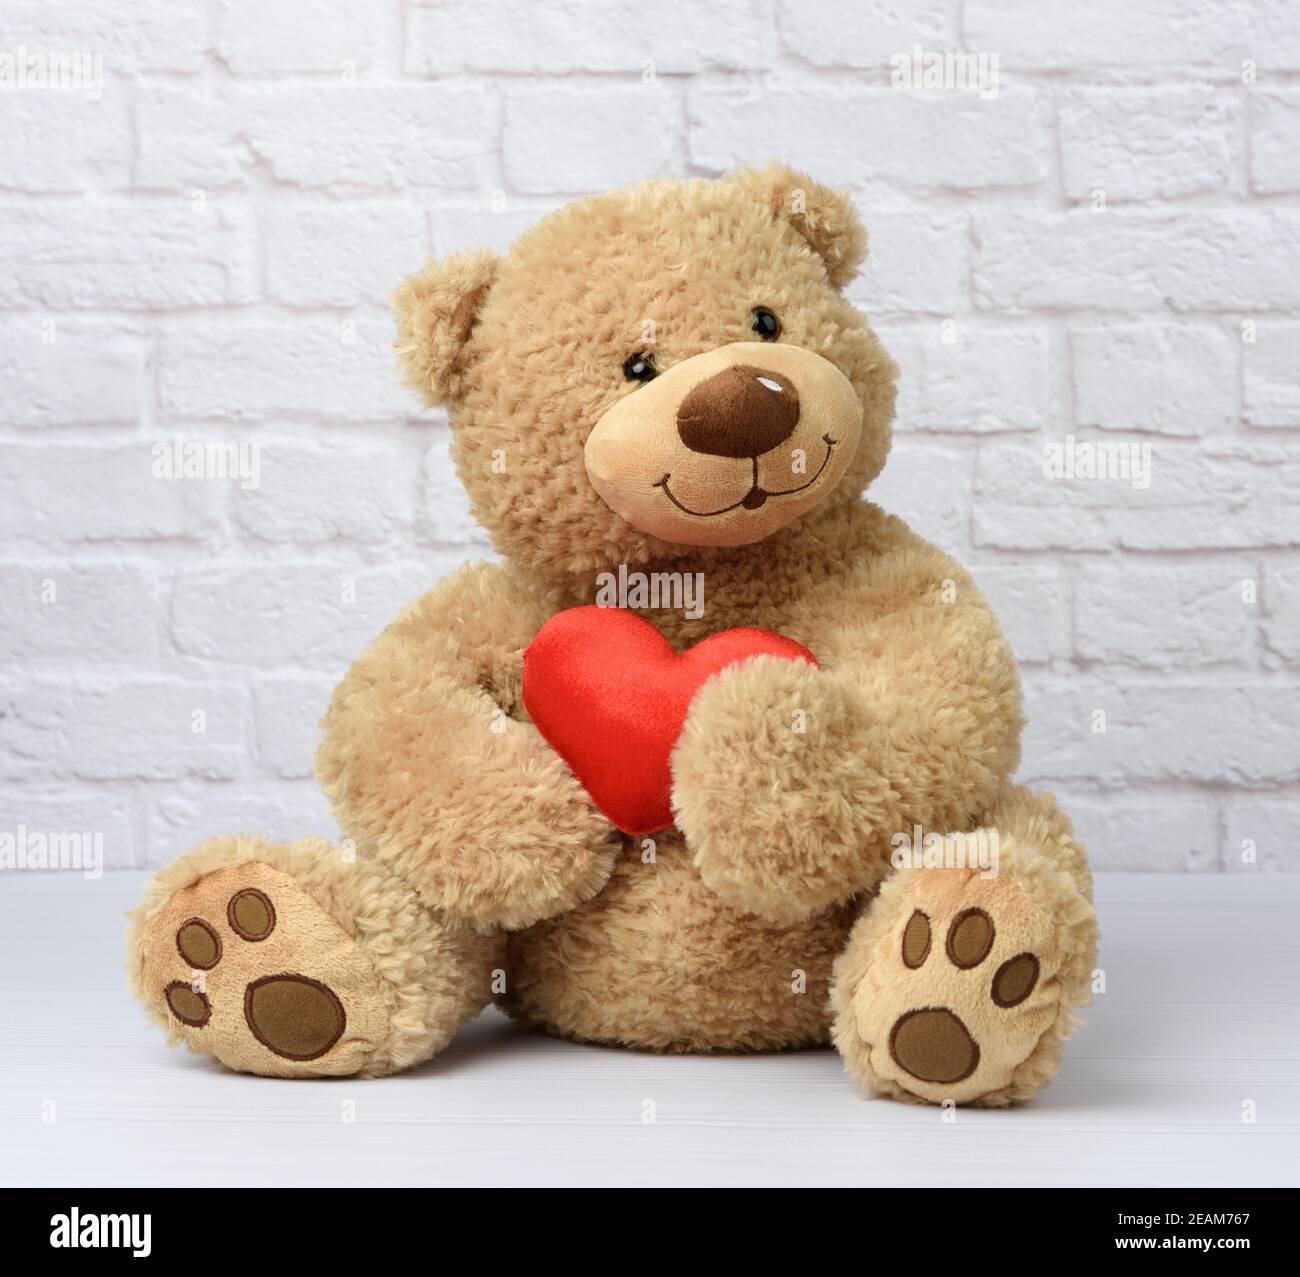 l'ours en peluche brun est assis sur un fond blanc, un jouet pour enfants Banque D'Images